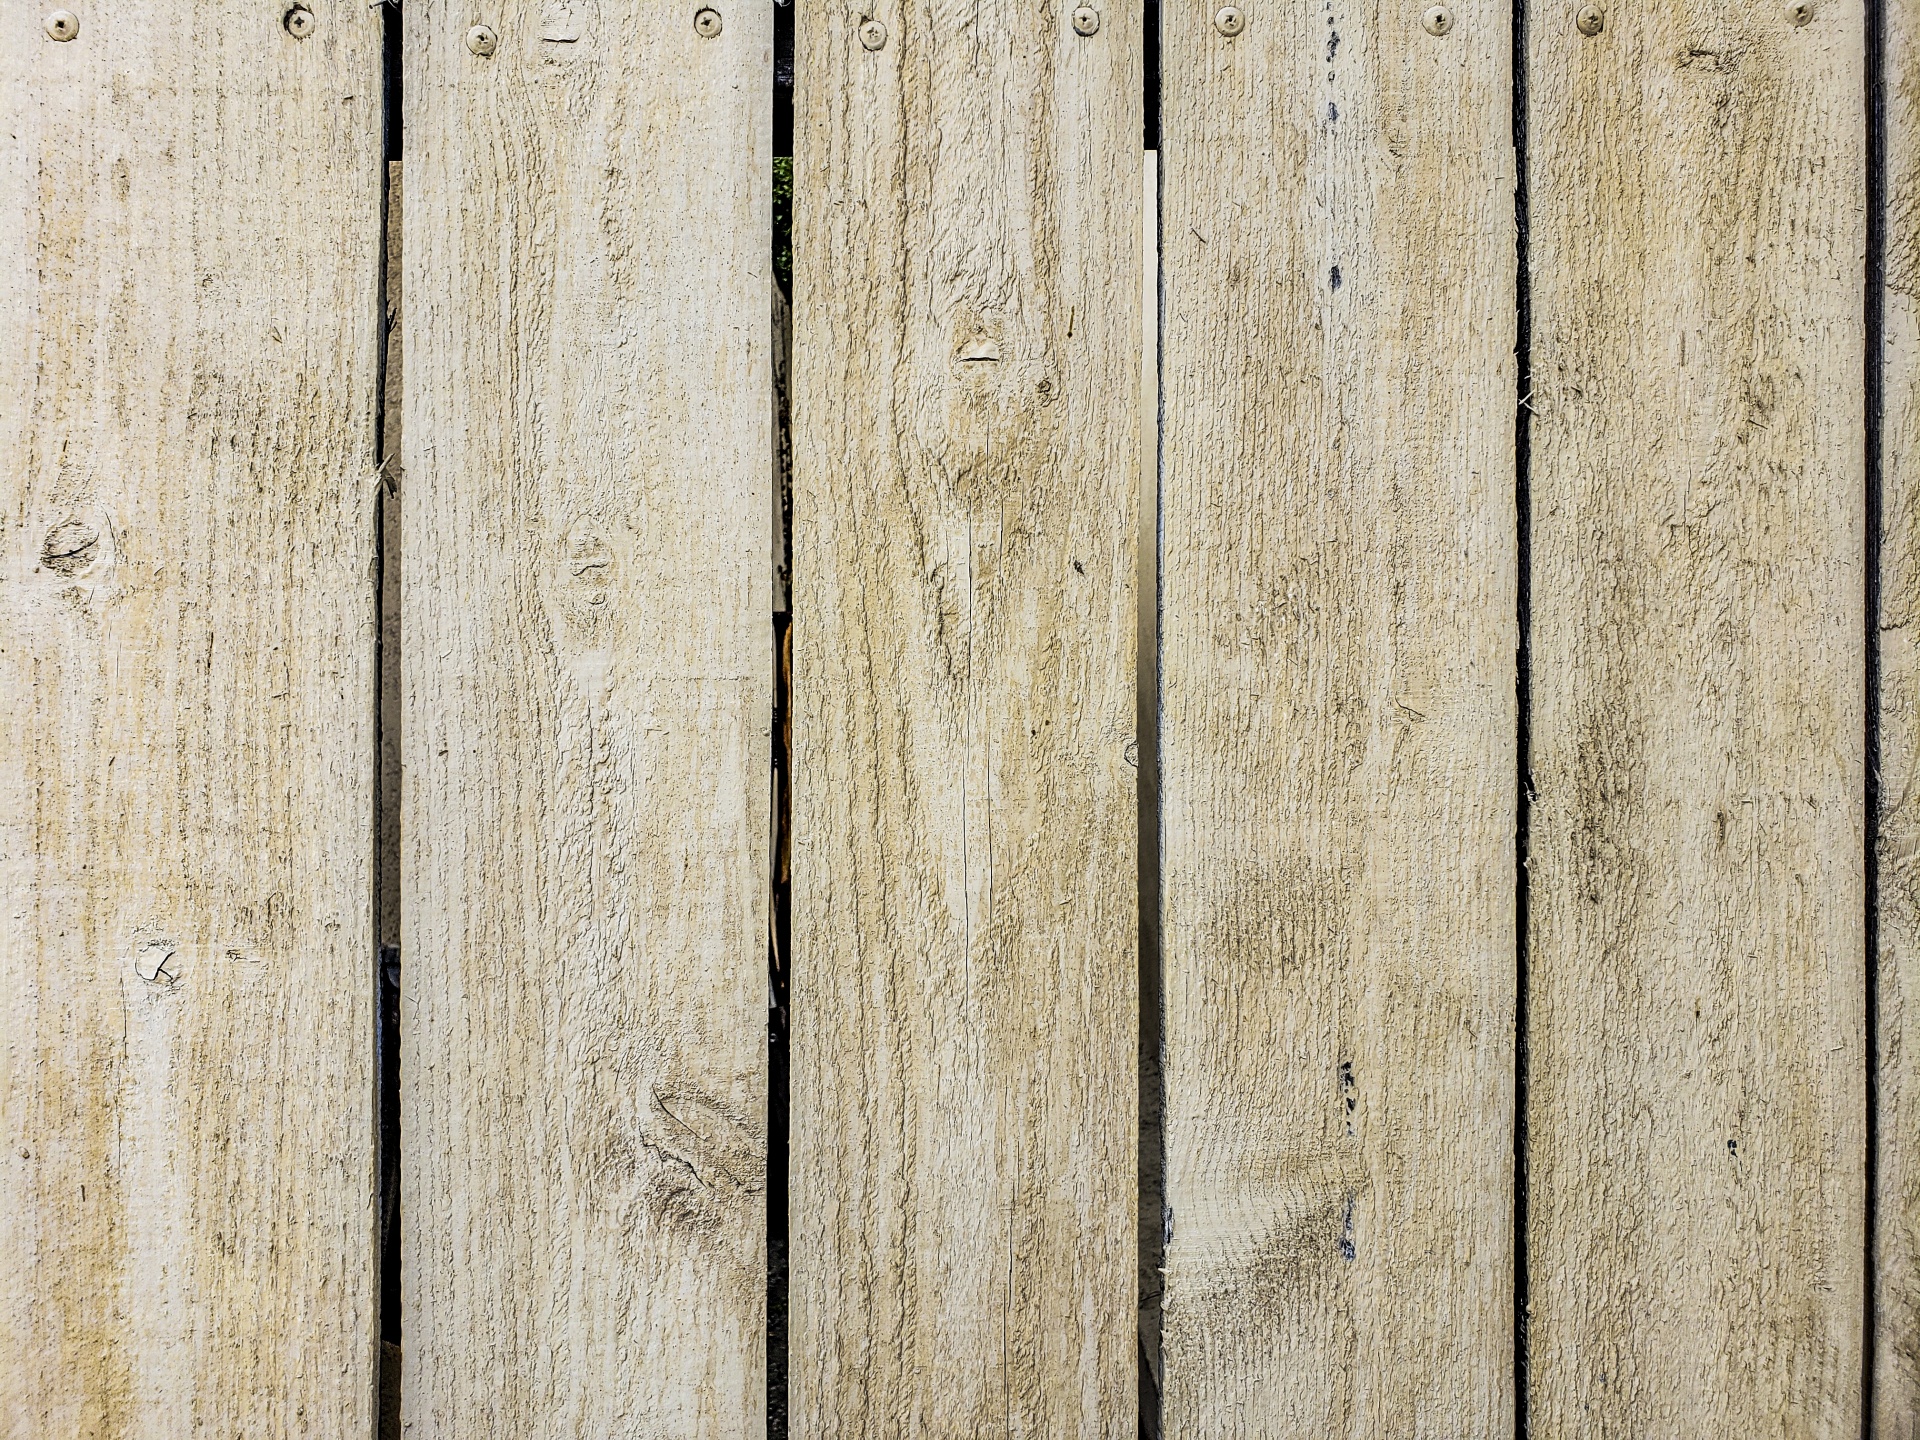 Wooden slat fence background